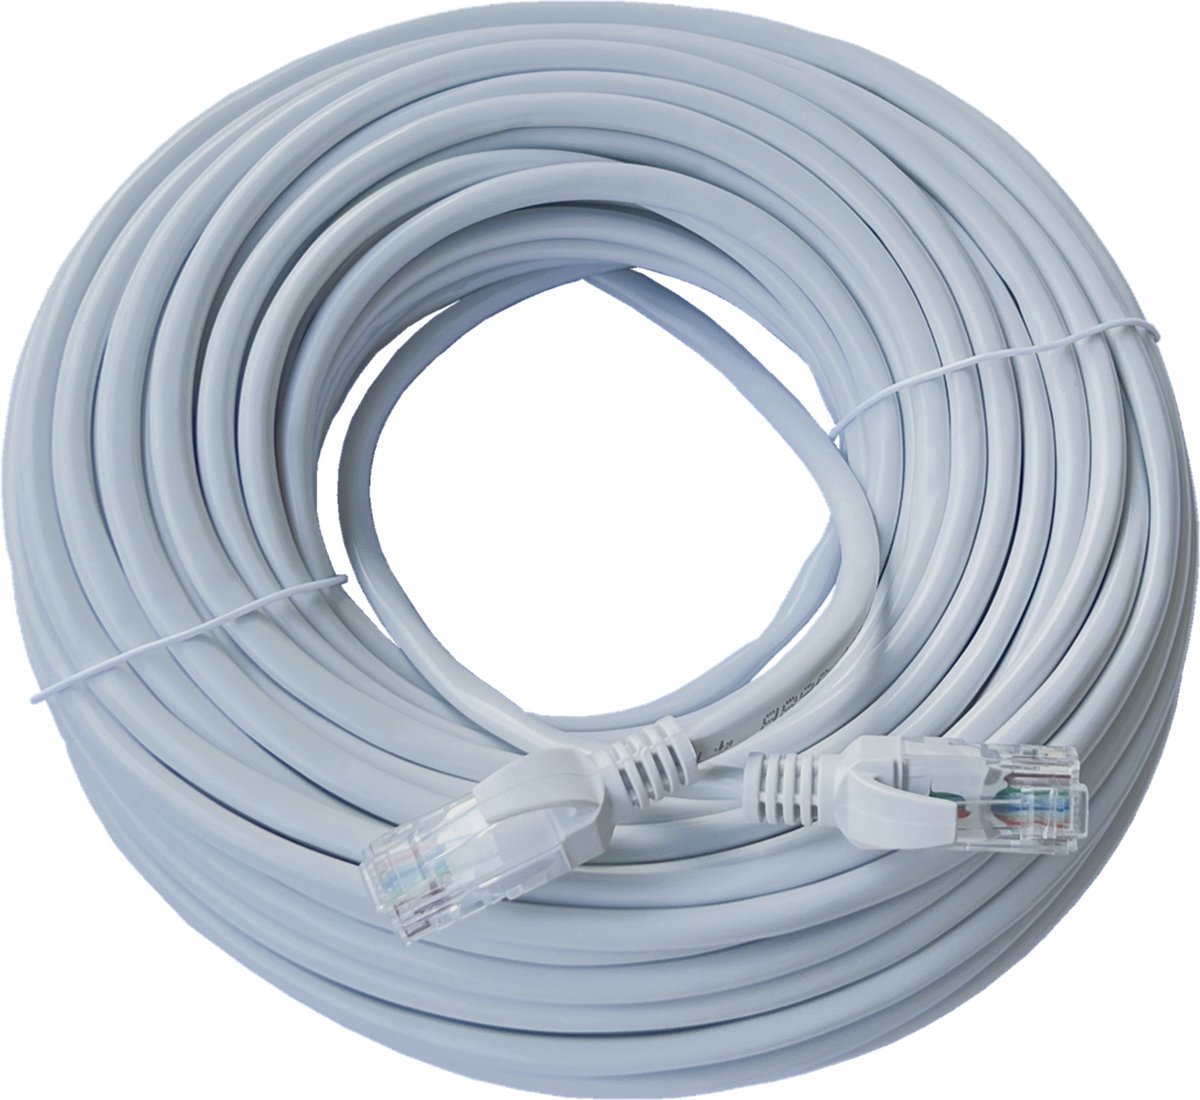 ValeDelucs Internetkabel 5 meter - CAT6 UTP Ethernet kabel RJ45 - Patchkabel LAN Cable Netwerkkabel - Grijs